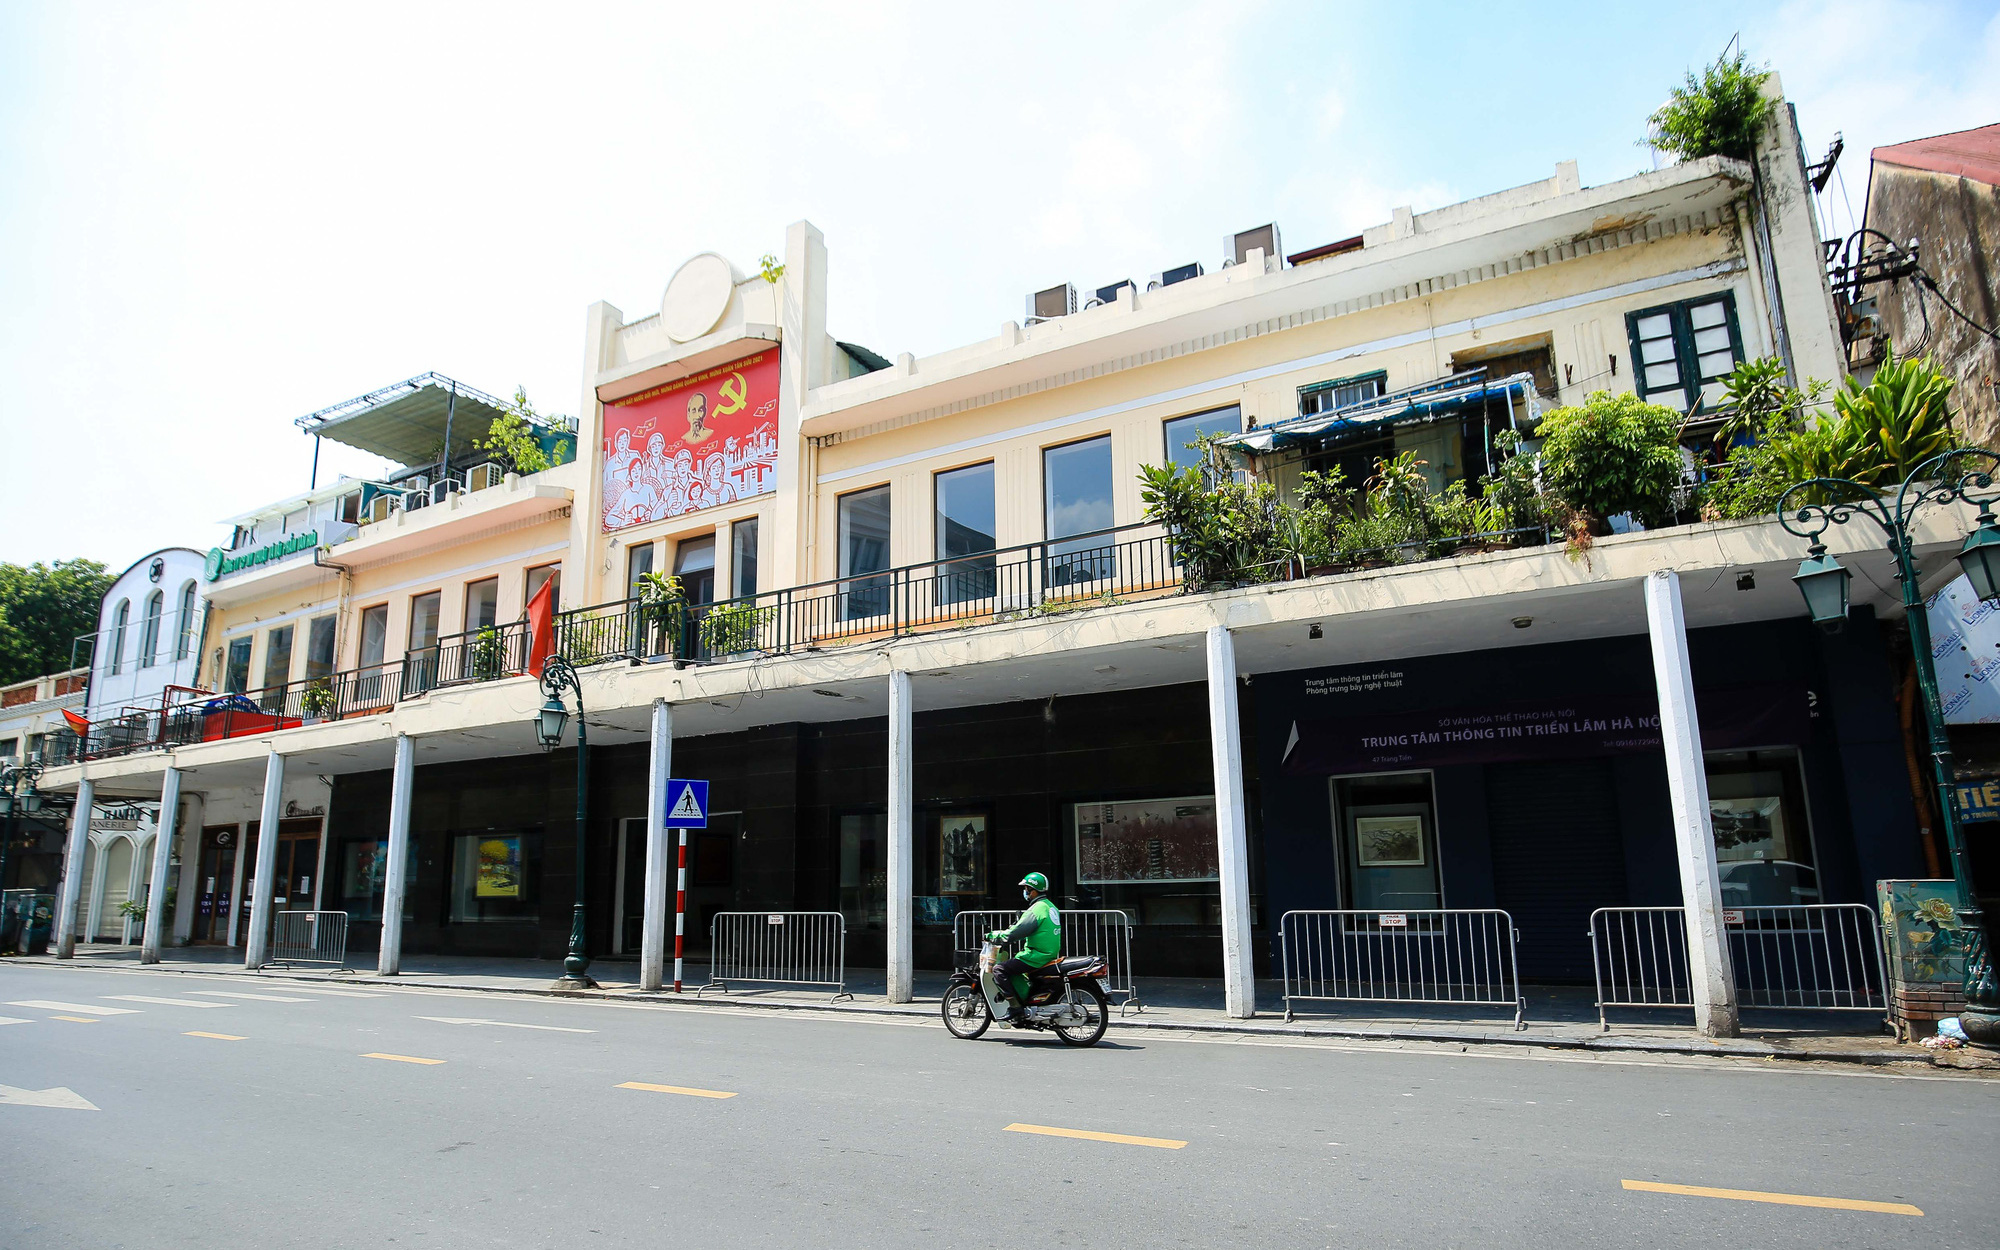 Hình ảnh loạt cửa hàng dịch vụ đóng cửa im lìm sau công điện mới của Chủ tịch Hà Nội